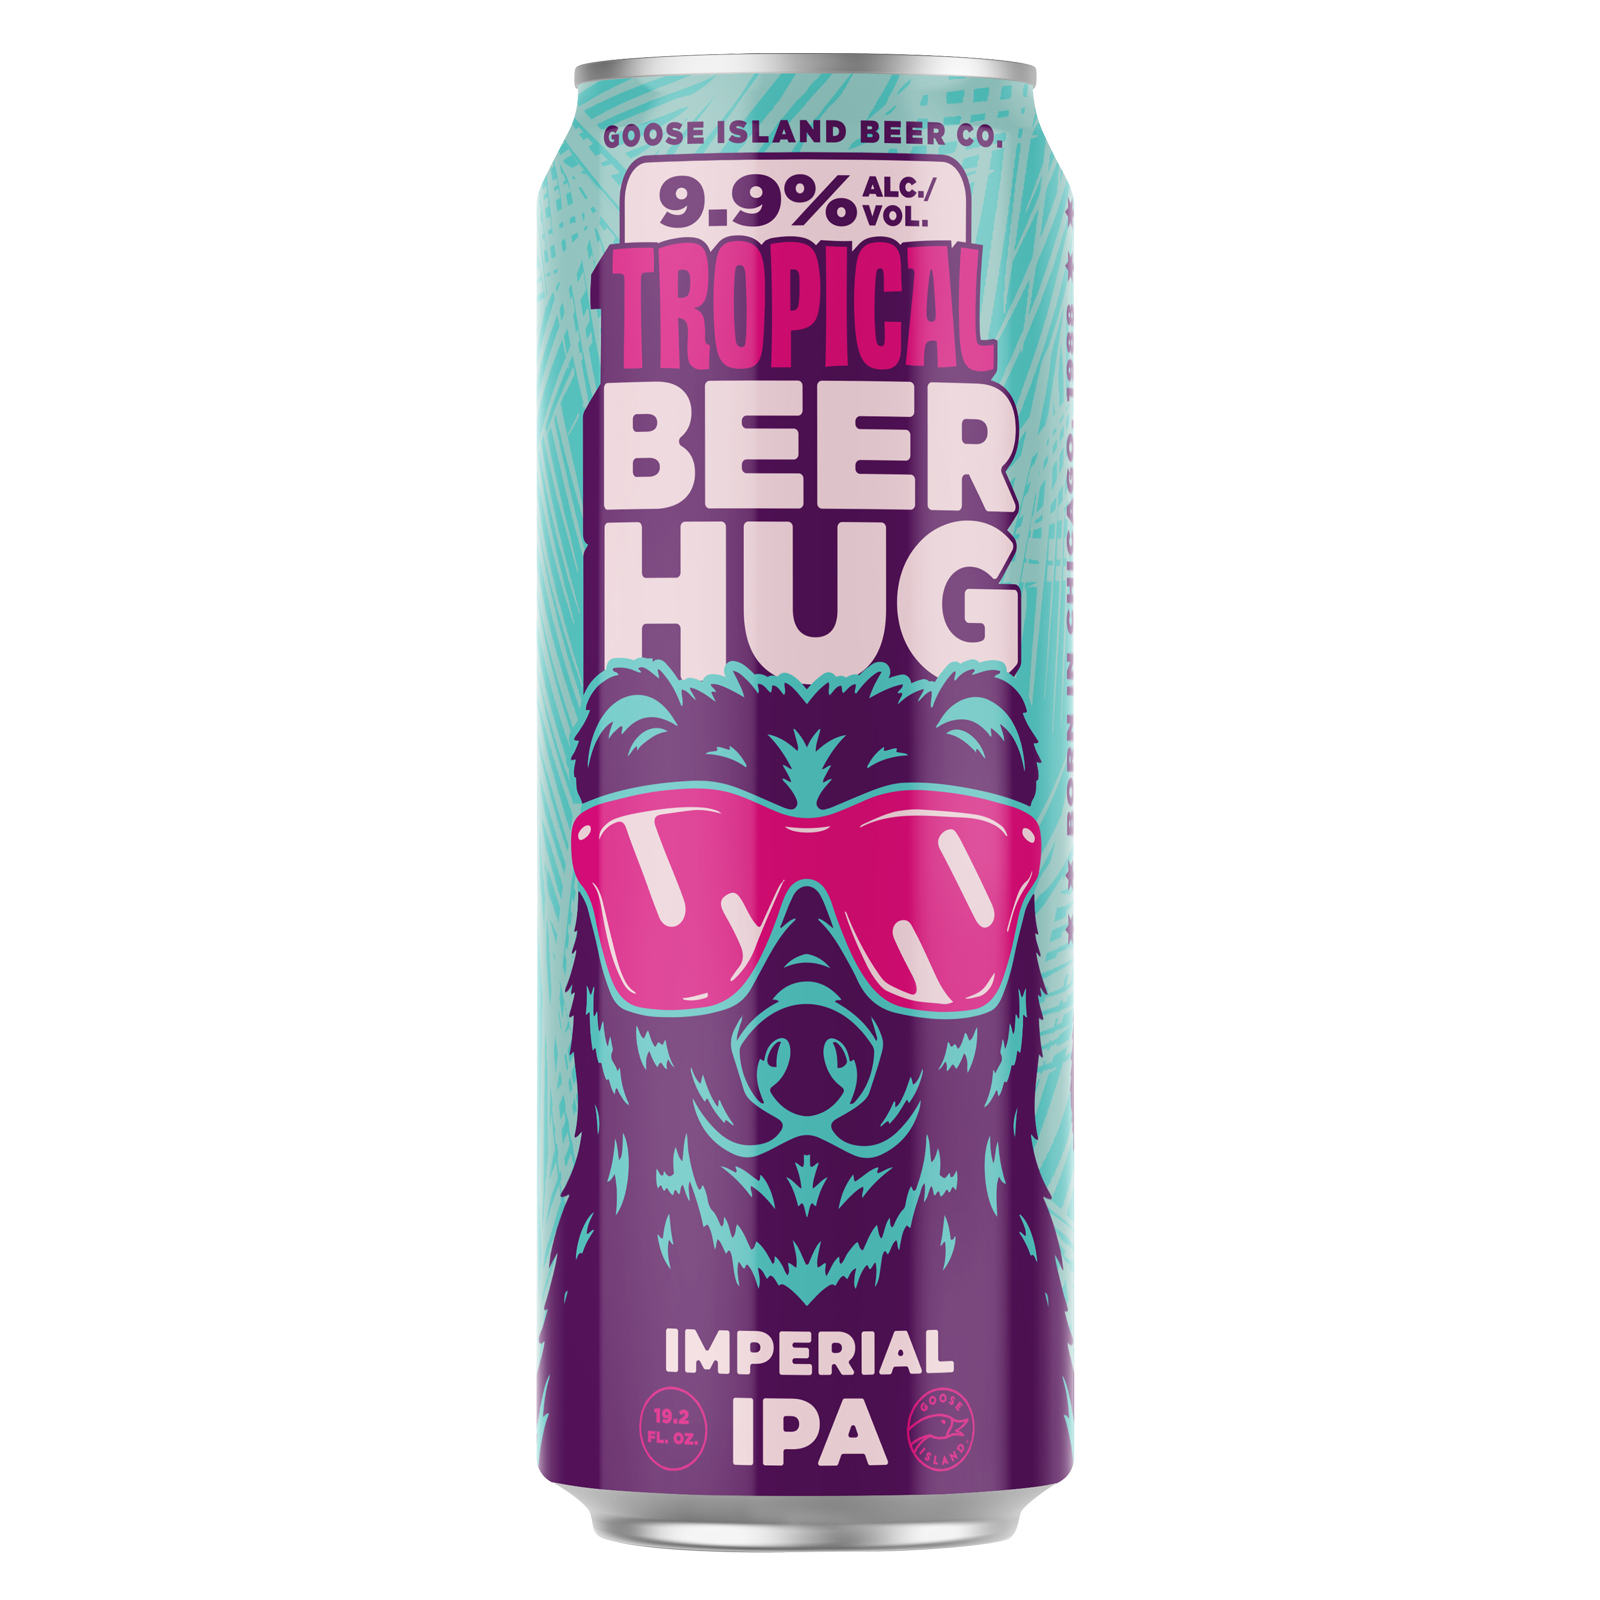 Goose Island Tropical Beer Hug Single 19.2oz Can 9.9% ABV